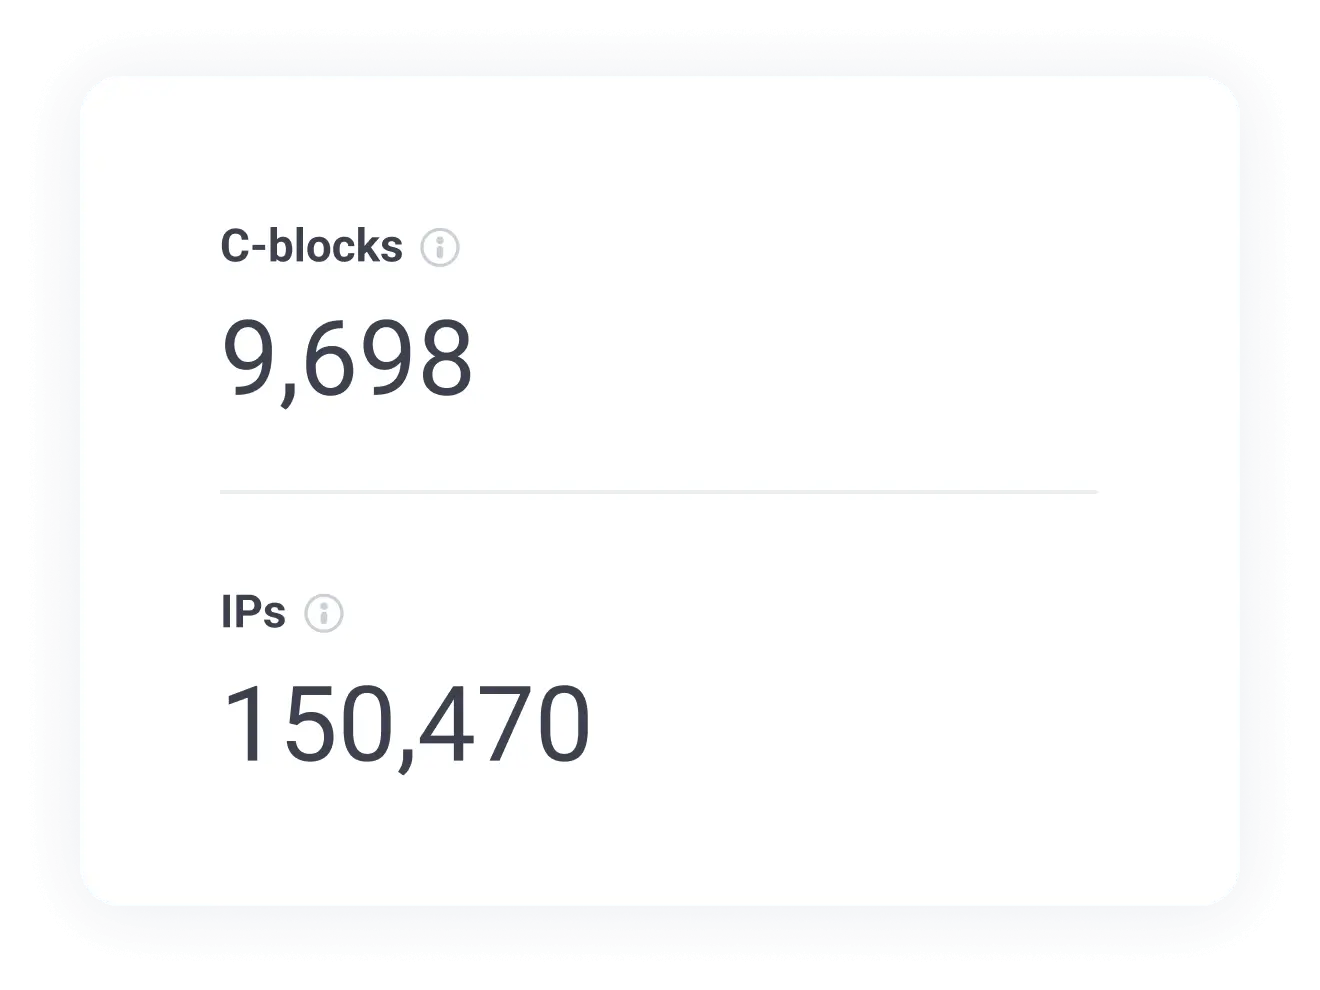 Проверьте количество уникальных IP-адресов и C-блоков